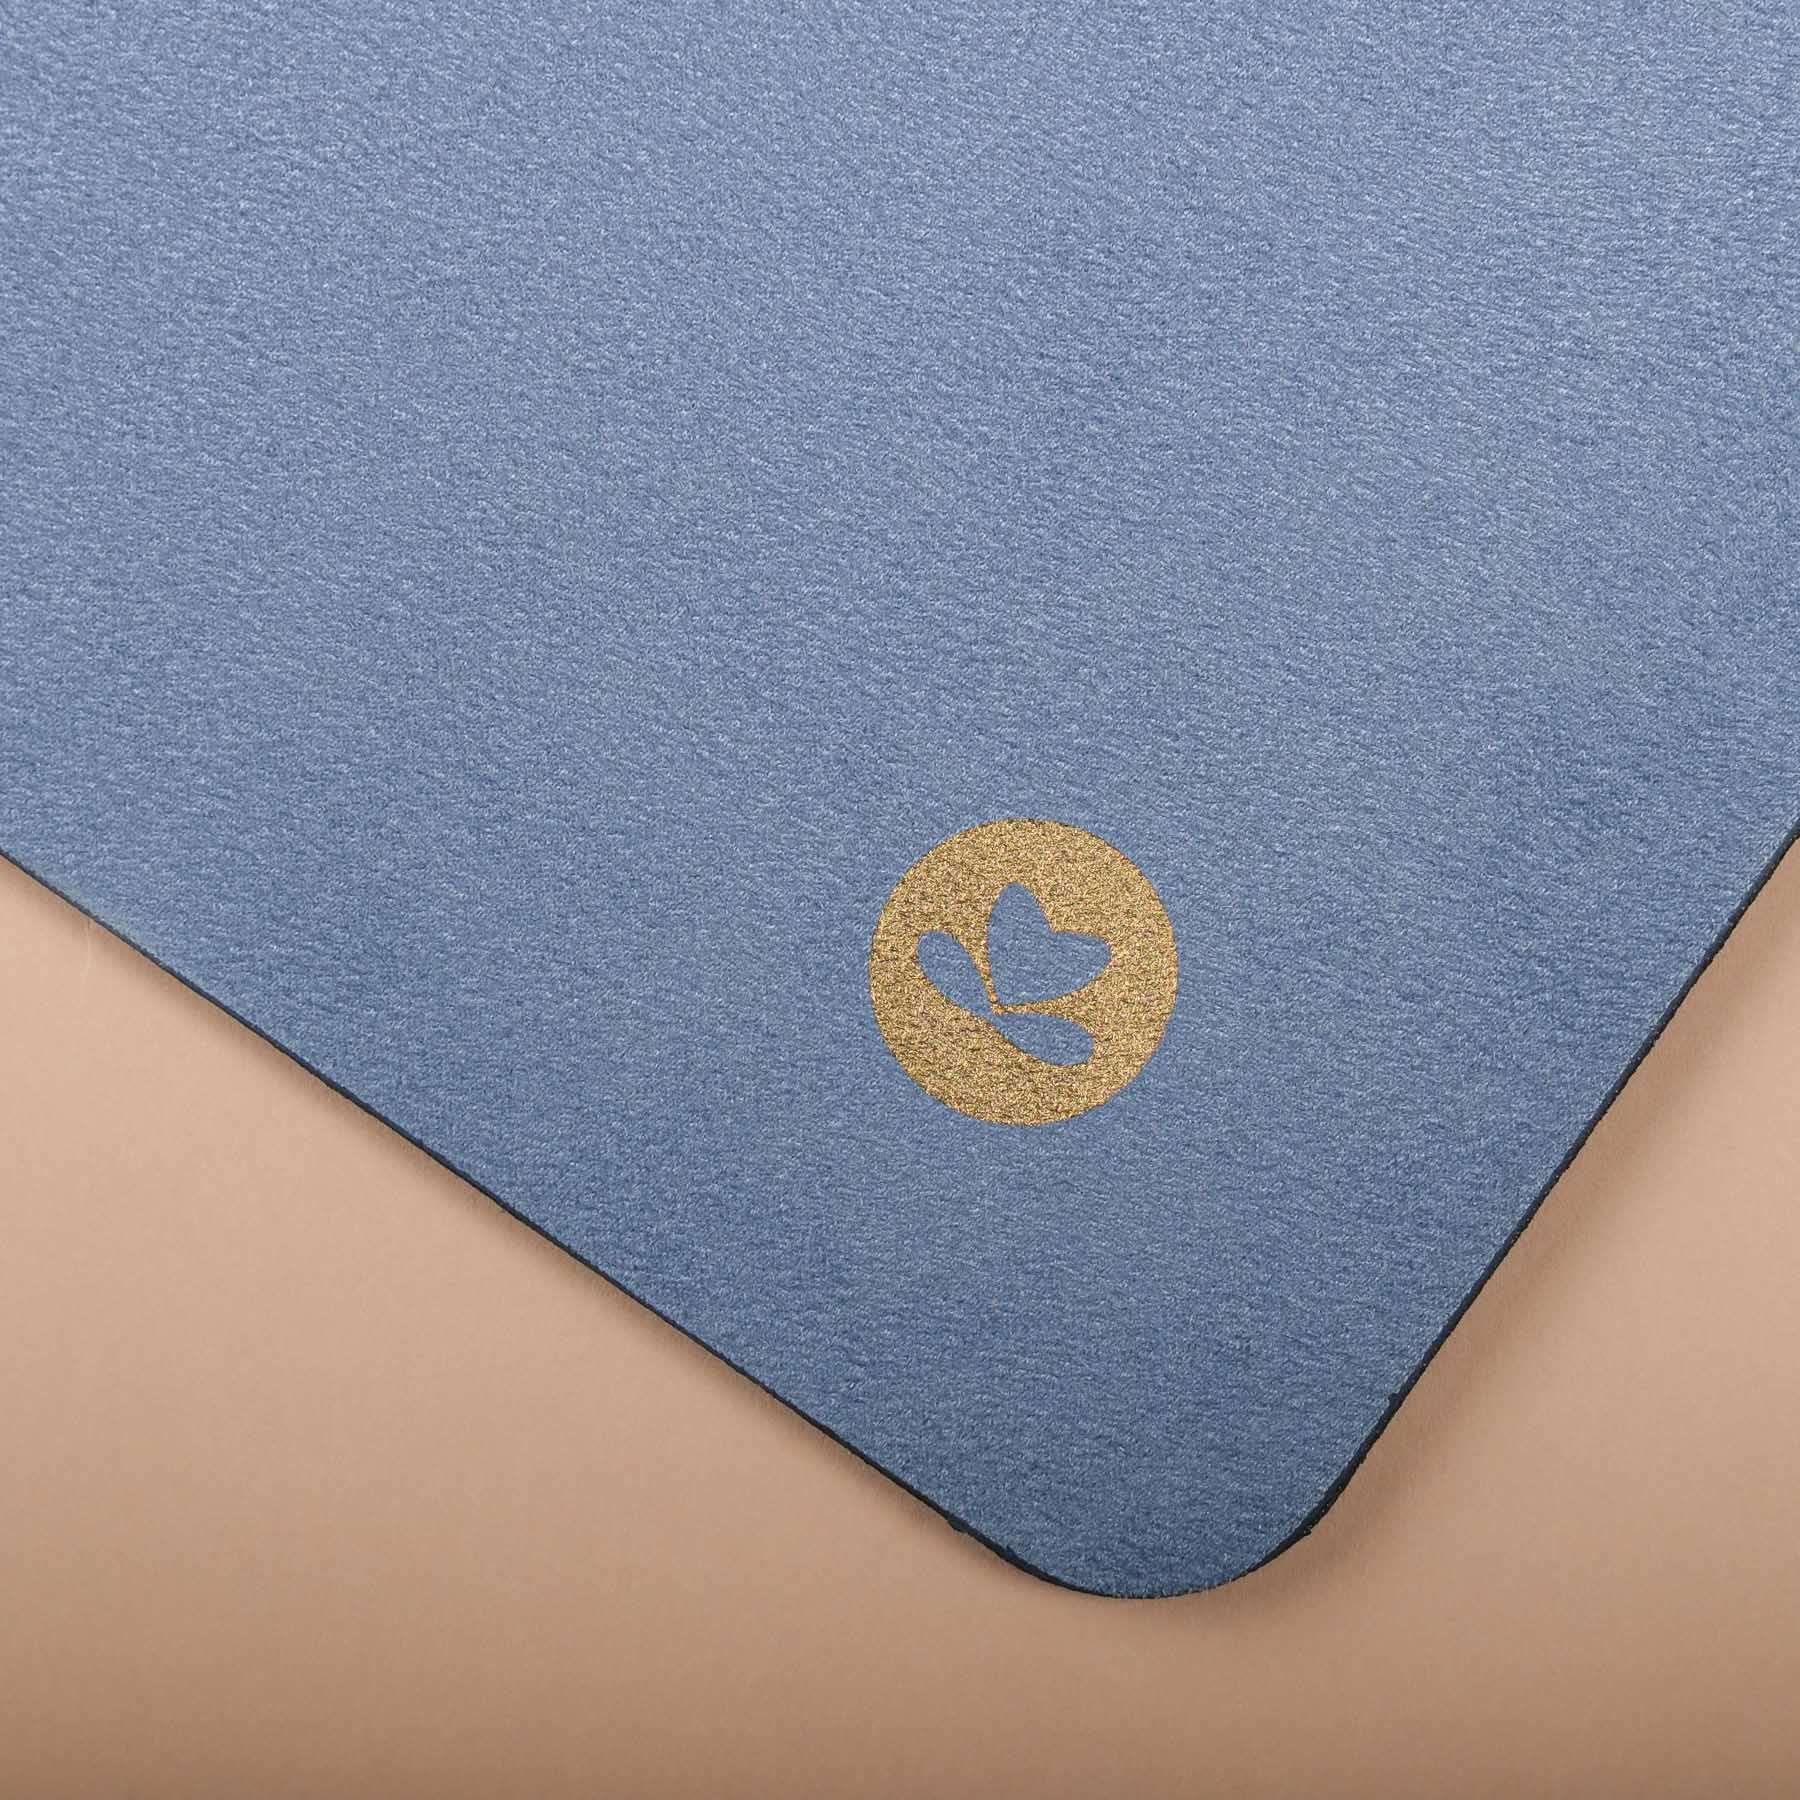  Yogamatte Velours Blume des Lebens gold Print graublau